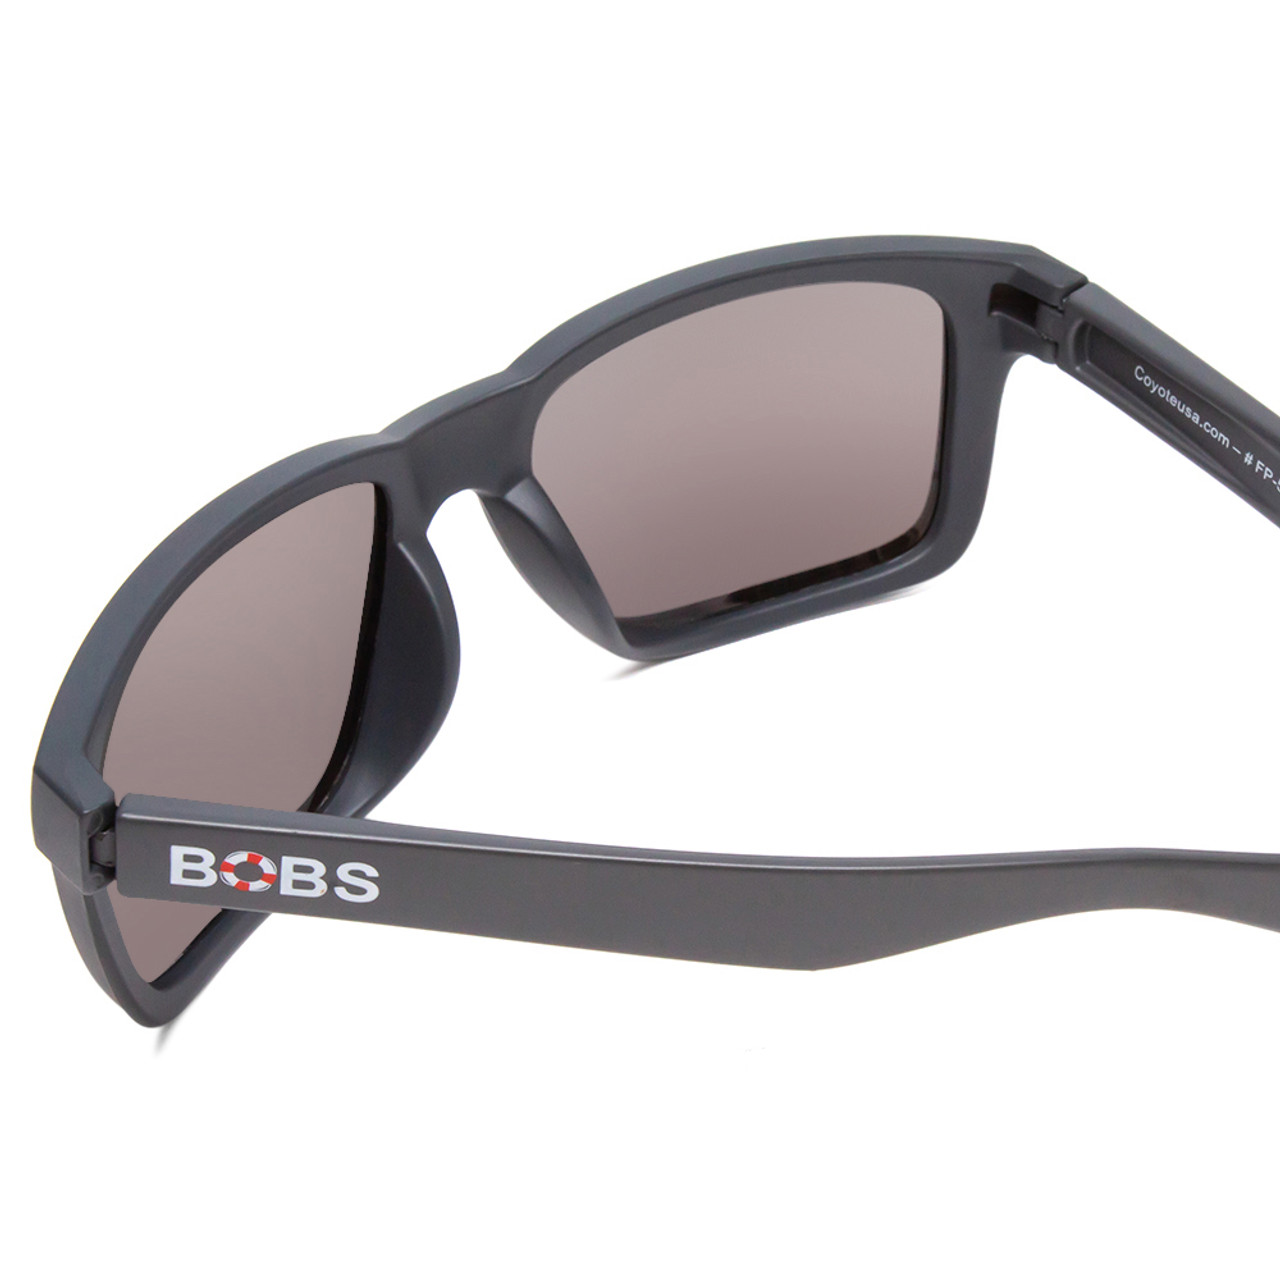 Coyote FP-69 Mens Full Rim Designer Polarized Sunglasses in Matte Black/G15  65mm - Polarized World